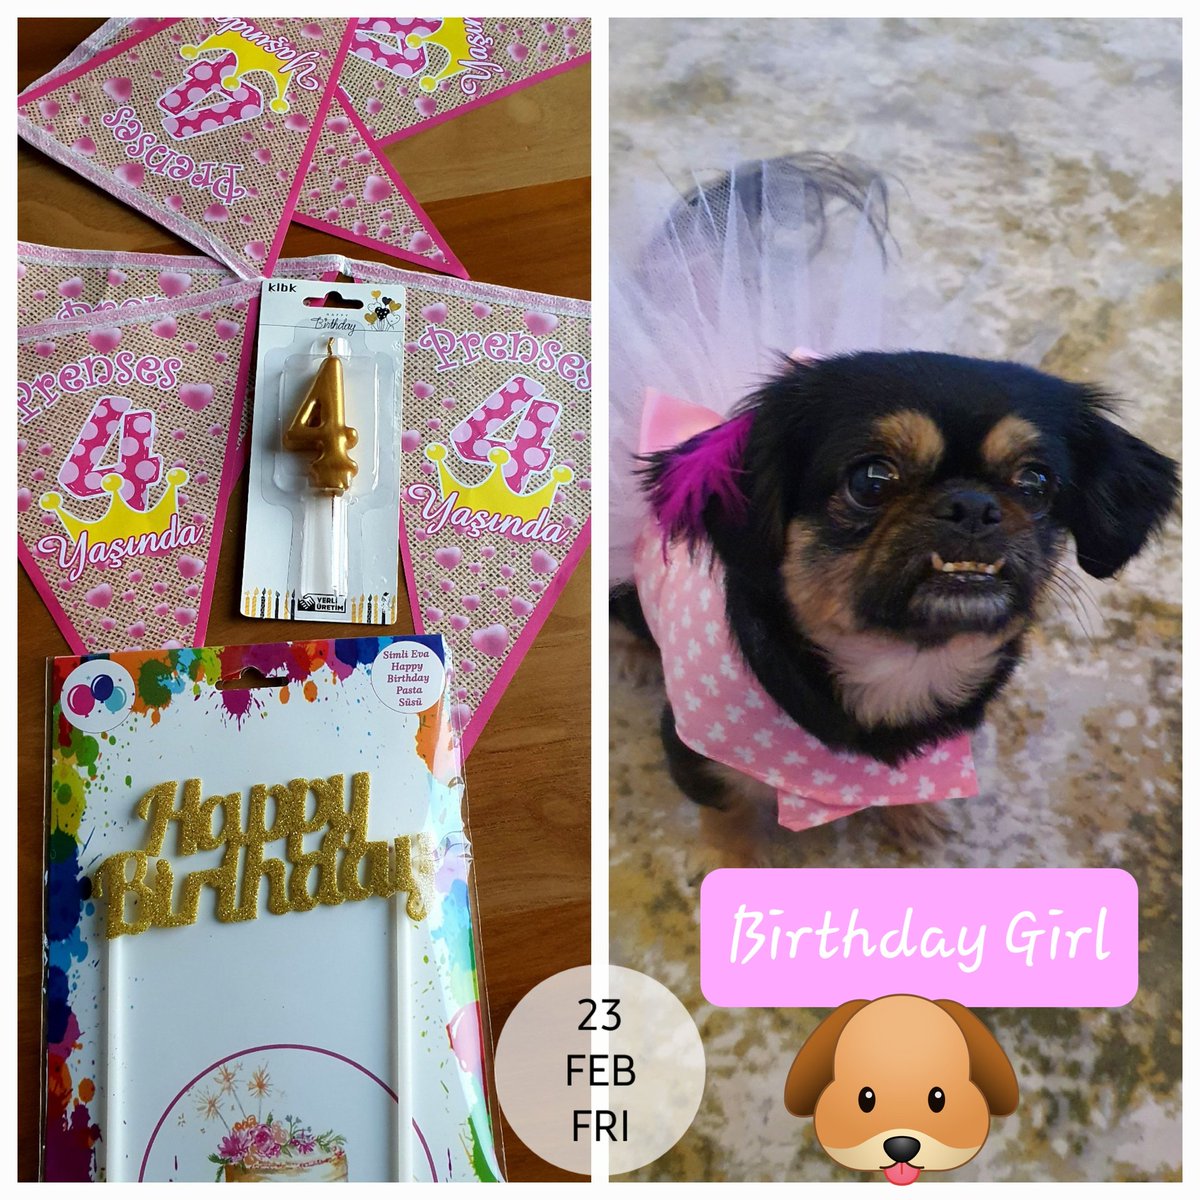 Birtakım hazırlıklar... 🥰🐶🎂 #prenses4yaşında #Hera #Birthdaygirl #Hera4yaşında #happybirthdayHera  #pekingese #pekinez #dogstagram #dogsmom #dogsofinstagram #HeraandHector #dogslove #pekingeselove #betterthanhumans